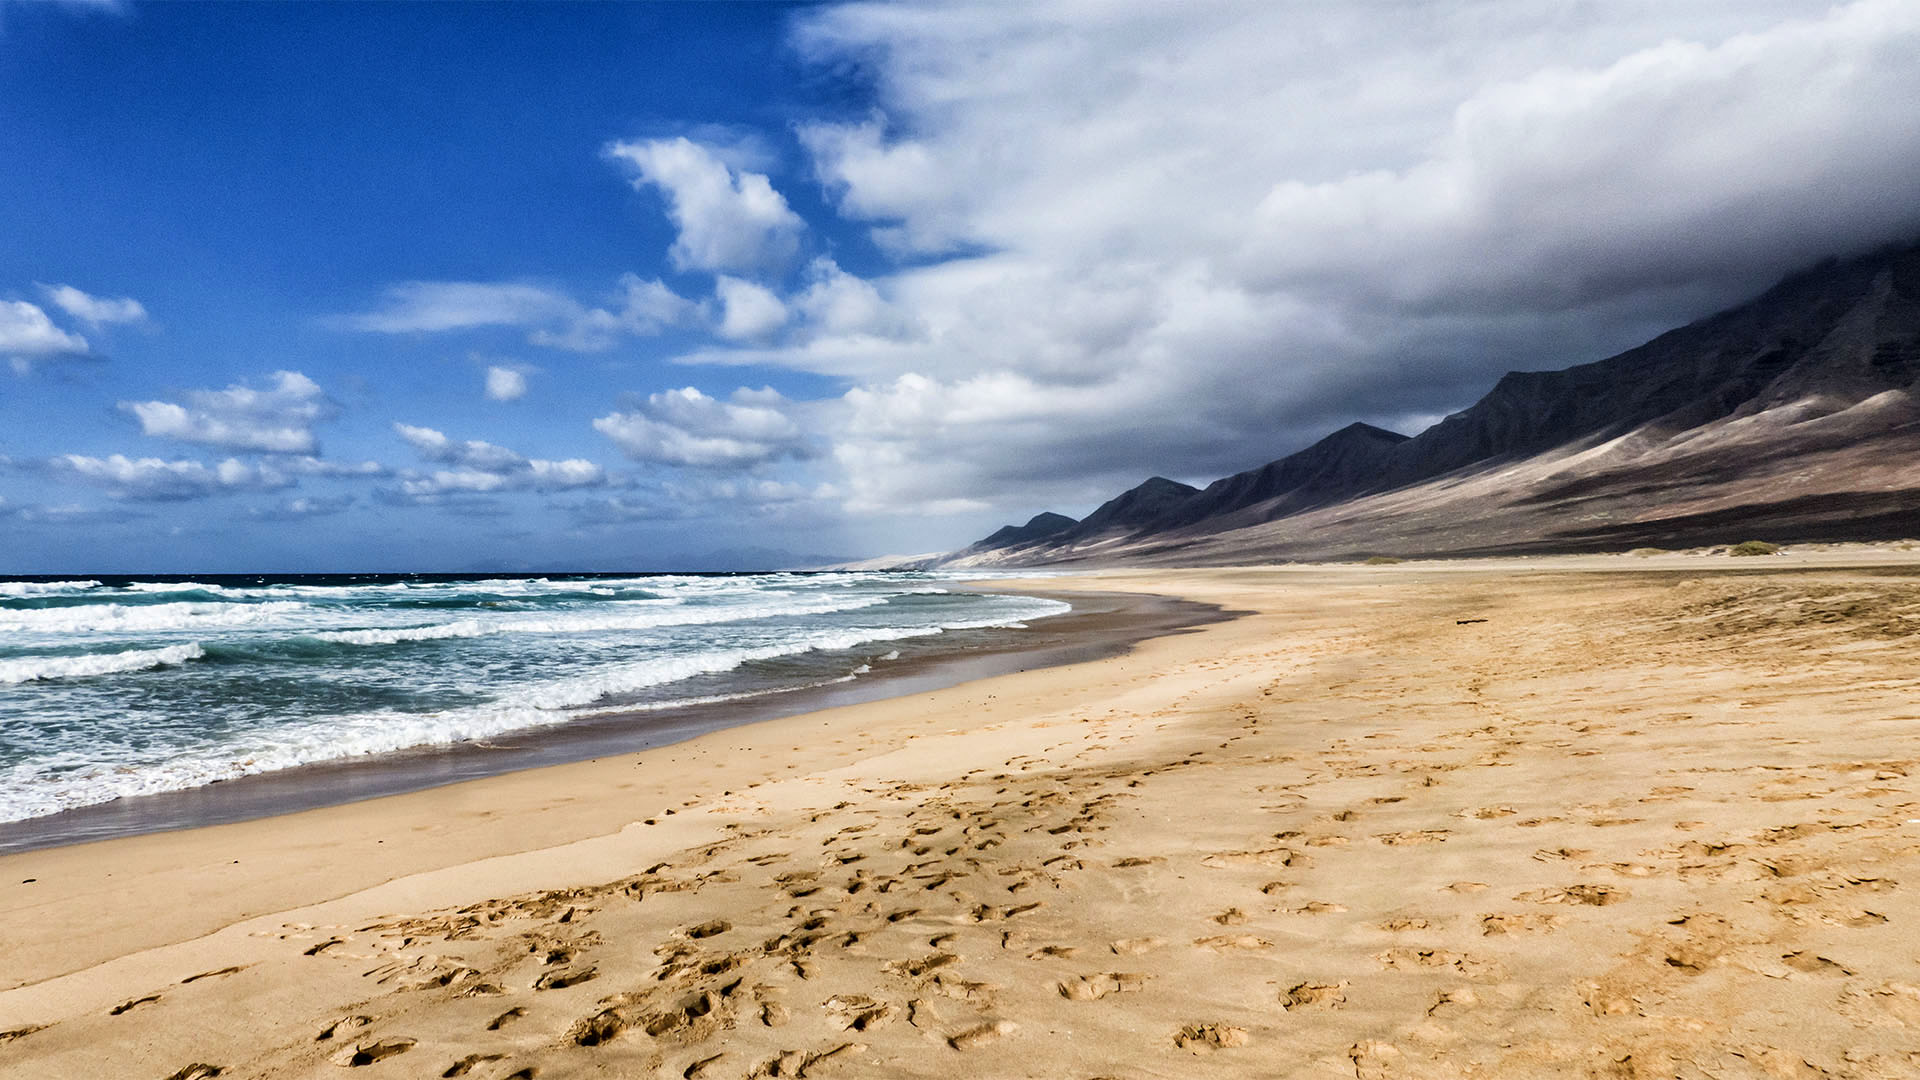 Cofete auf Fuerteventura – ein wohl weltweit einzigartiger Strand. Ihn entlang zu wandern, ein spiritueles Erlebnis.